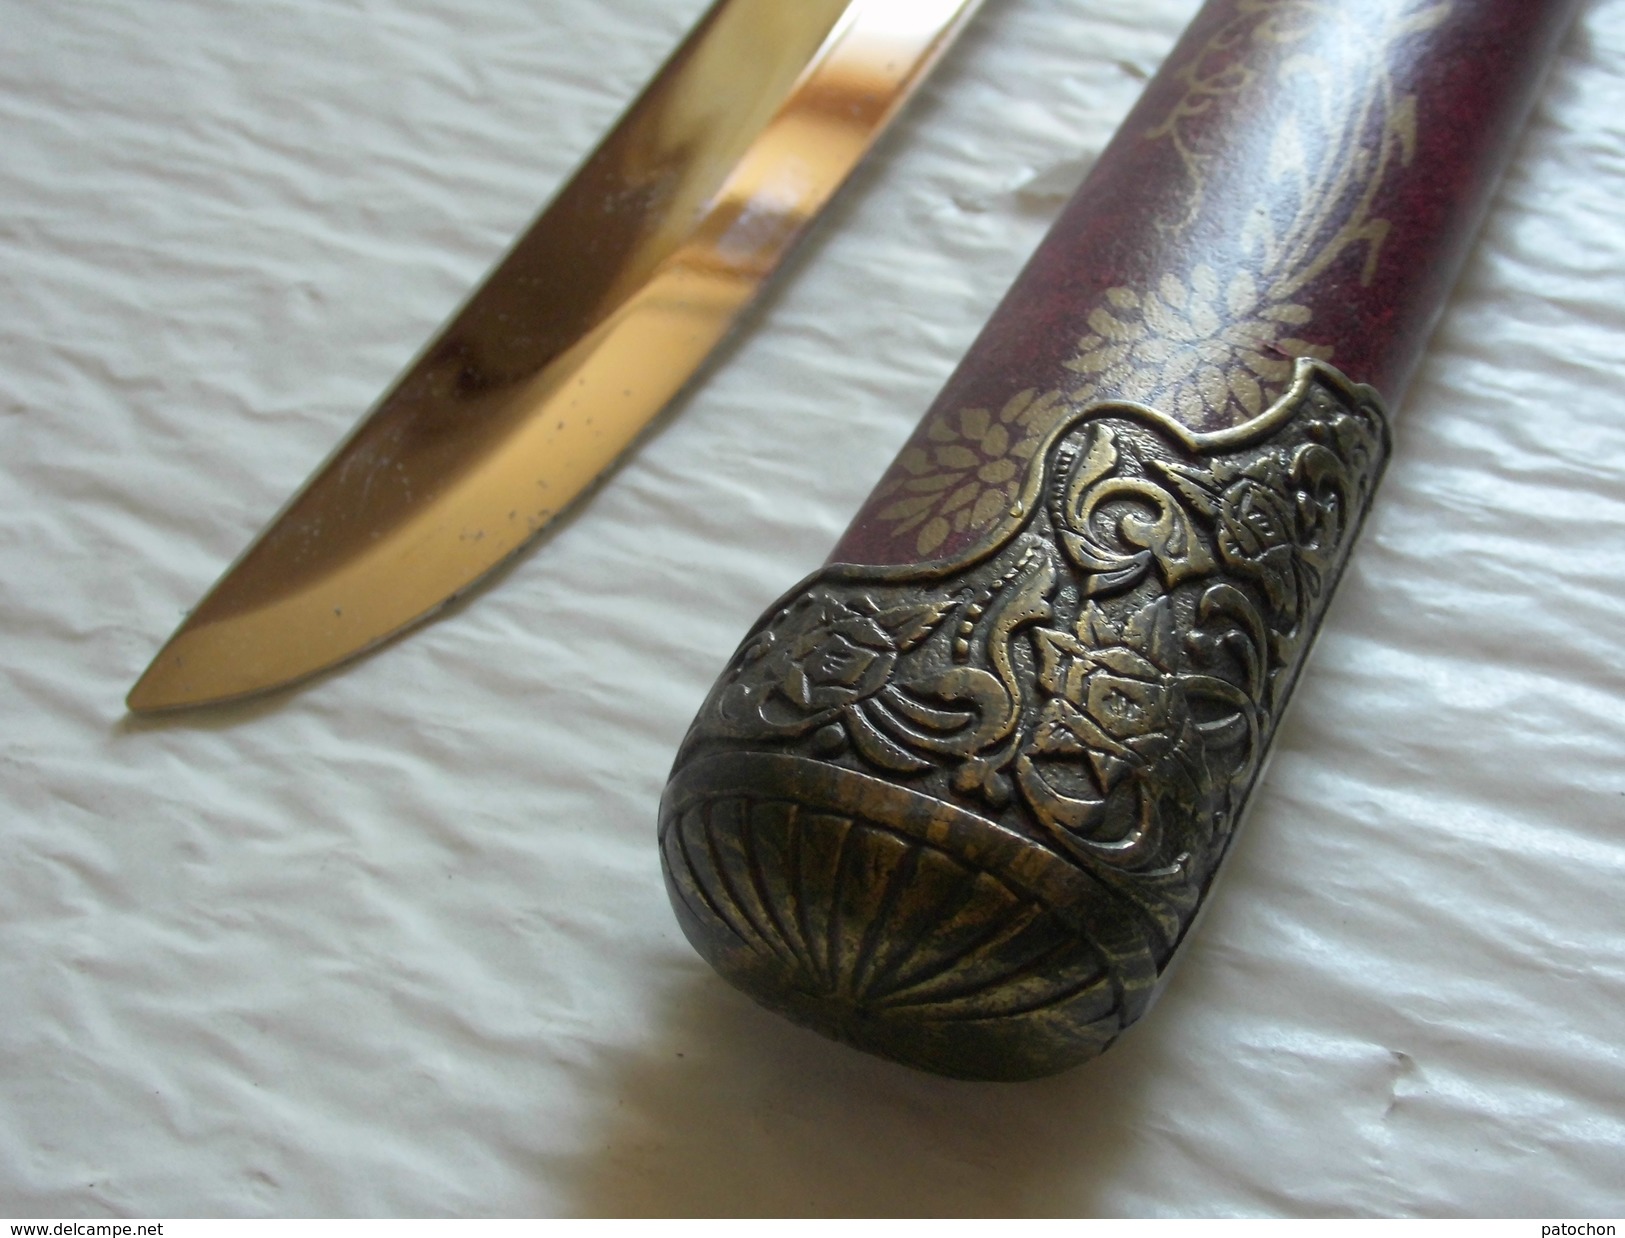 Déstockage Lot indissociable couteau de décoration Objets ethnique souvenir du Japon Afrique Moyen Orient.